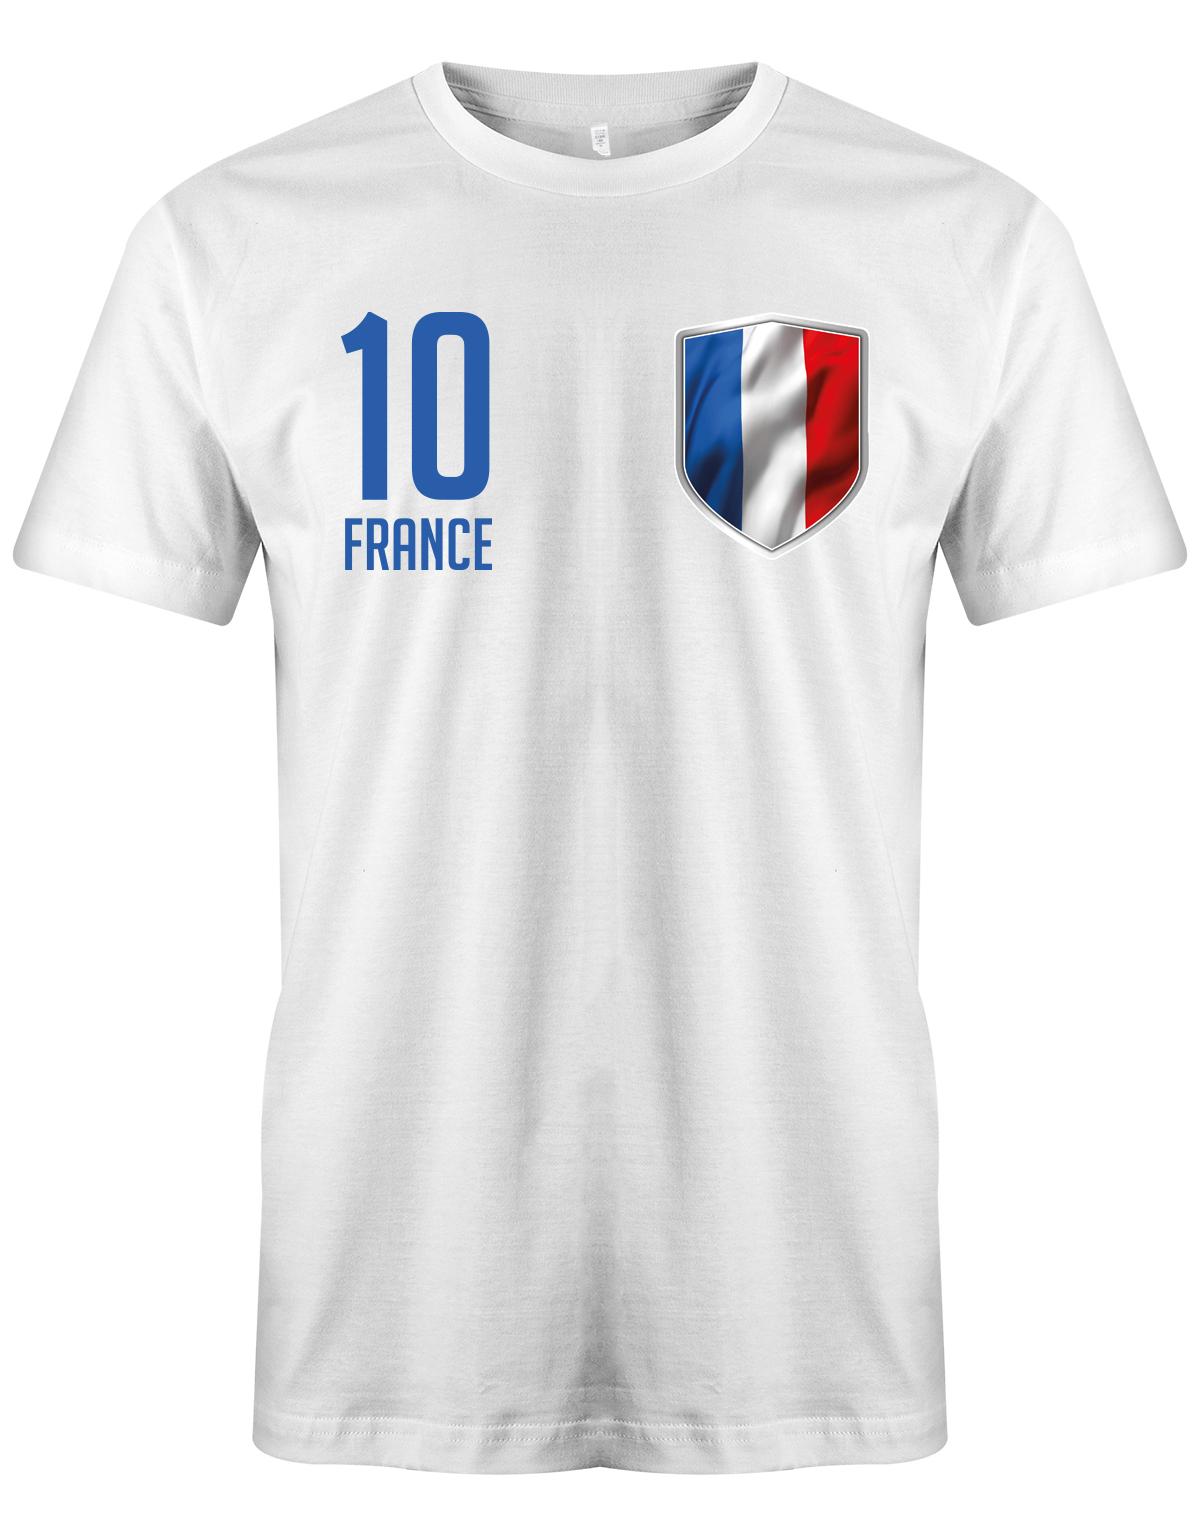 France-10-Herren-Shirt-Weiss